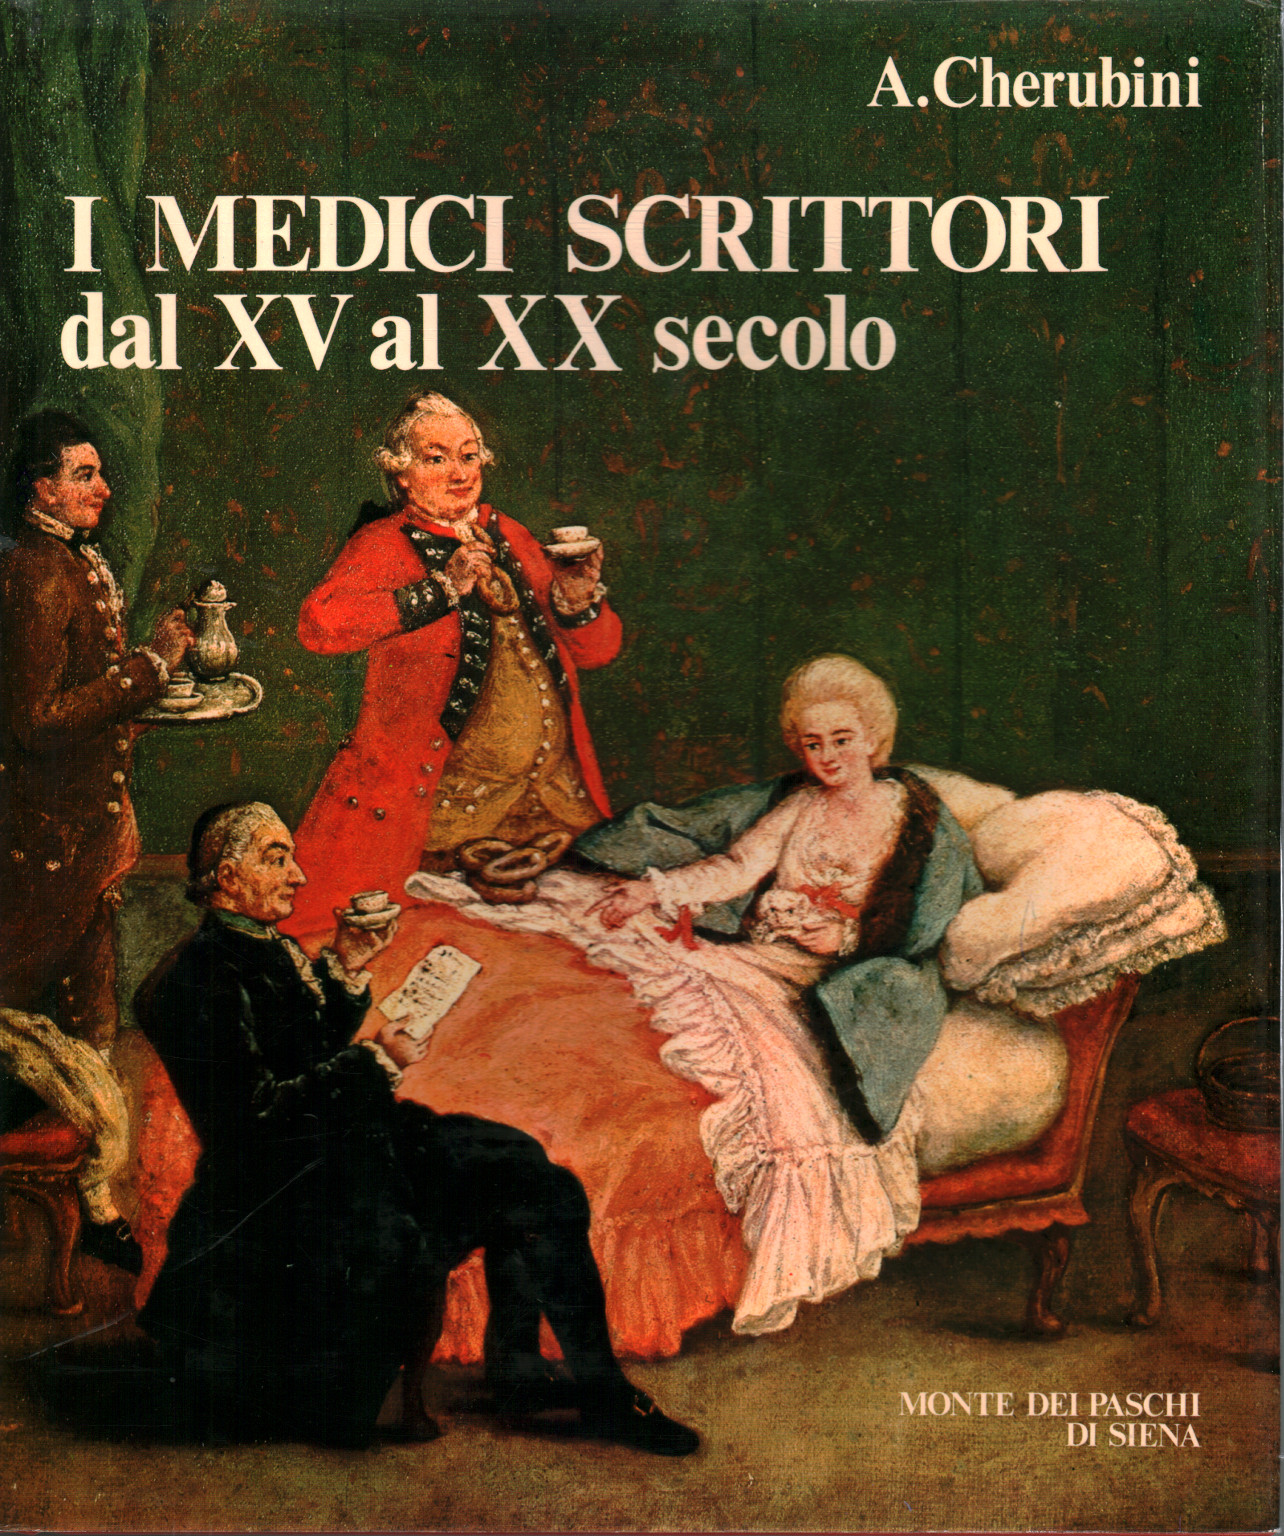 Medizinische Schriftsteller vom 15. bis 20. Jahrhundert, Arnaldo Cherubini